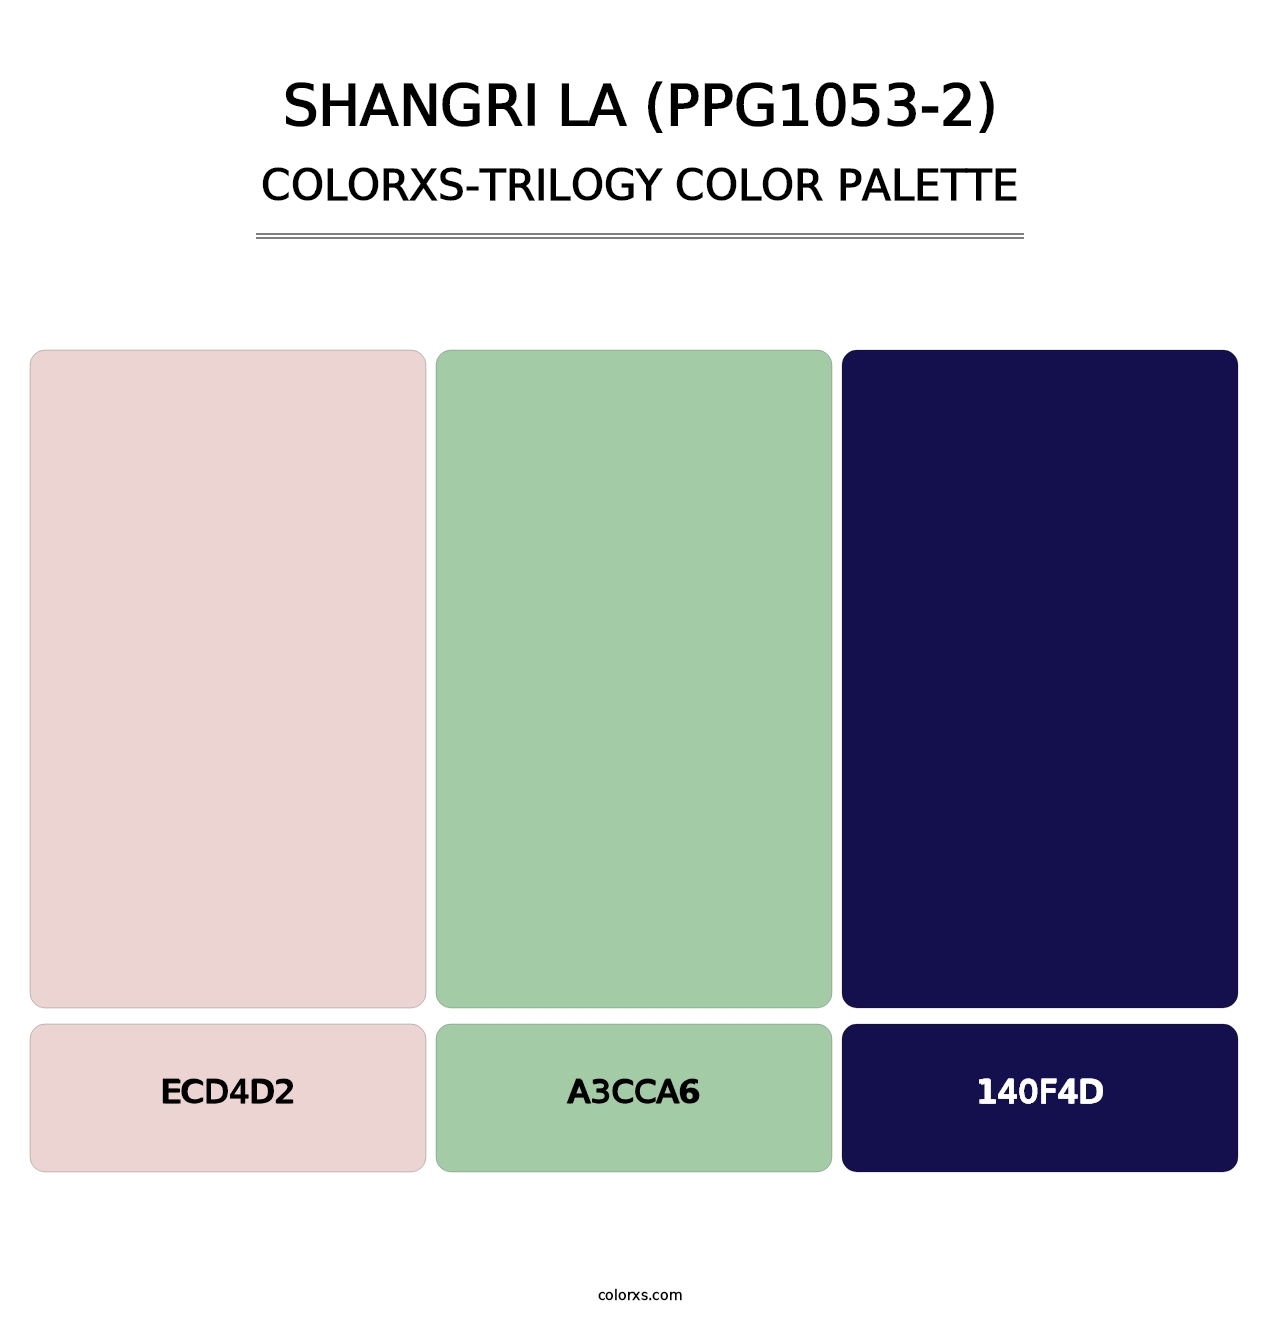 Shangri La (PPG1053-2) - Colorxs Trilogy Palette